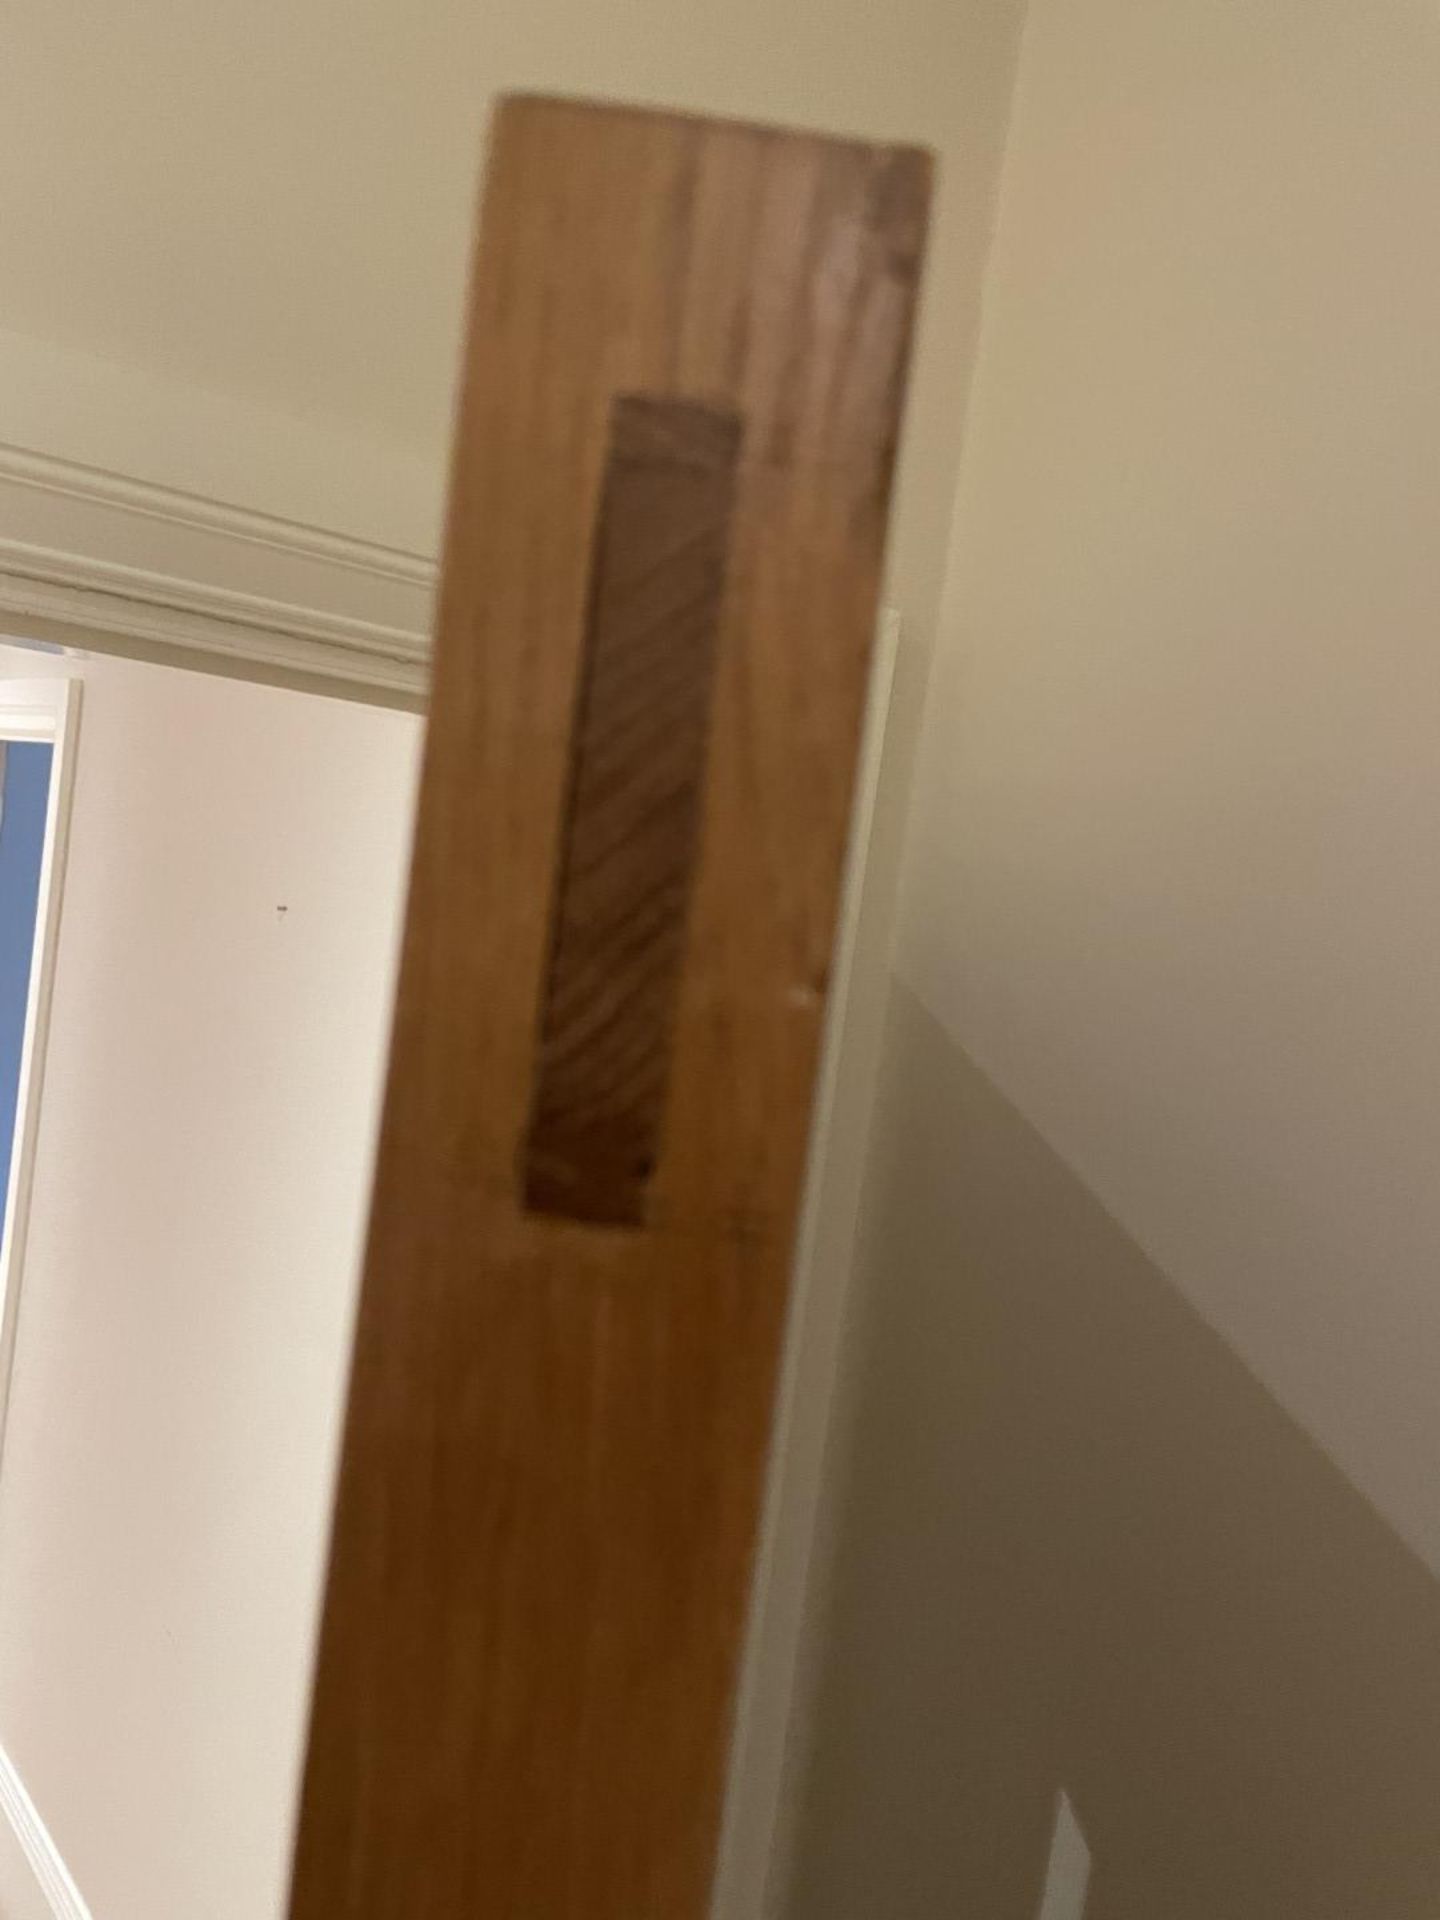 1 x Solid Oak Wooden Lockable Internal Door - Ref: PAN285 / UTIL - CL896 - NO VAT ON THE HAMMER - - Image 8 of 9